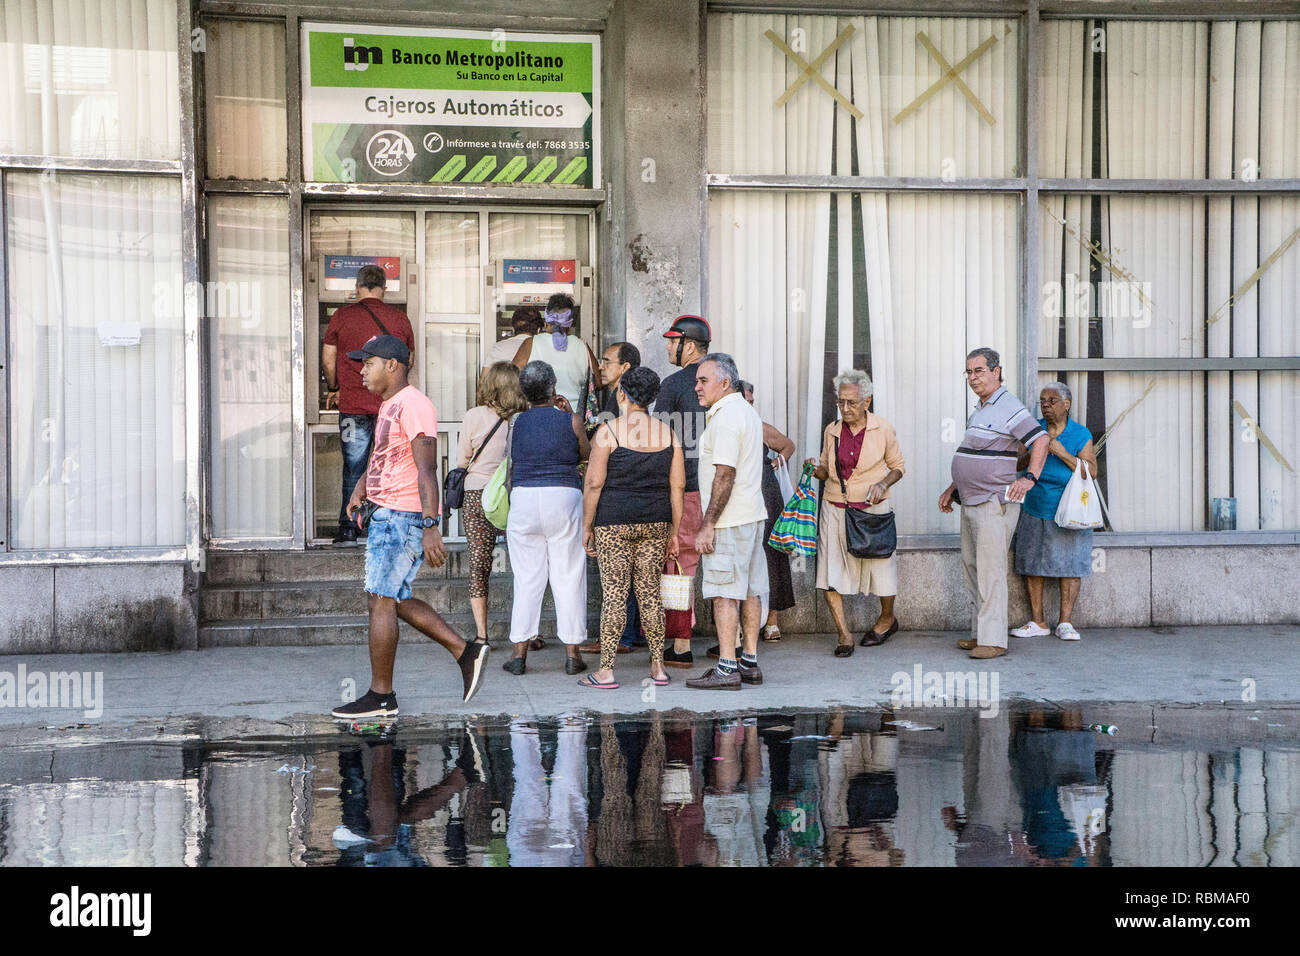 Varie Gruppo multirazziale del popolo cubano di attendere in linea per utilizzare il marciapiede macchine di cassa del banco Metropolitano in Avana che erogano soltanto pesos cubani Foto Stock